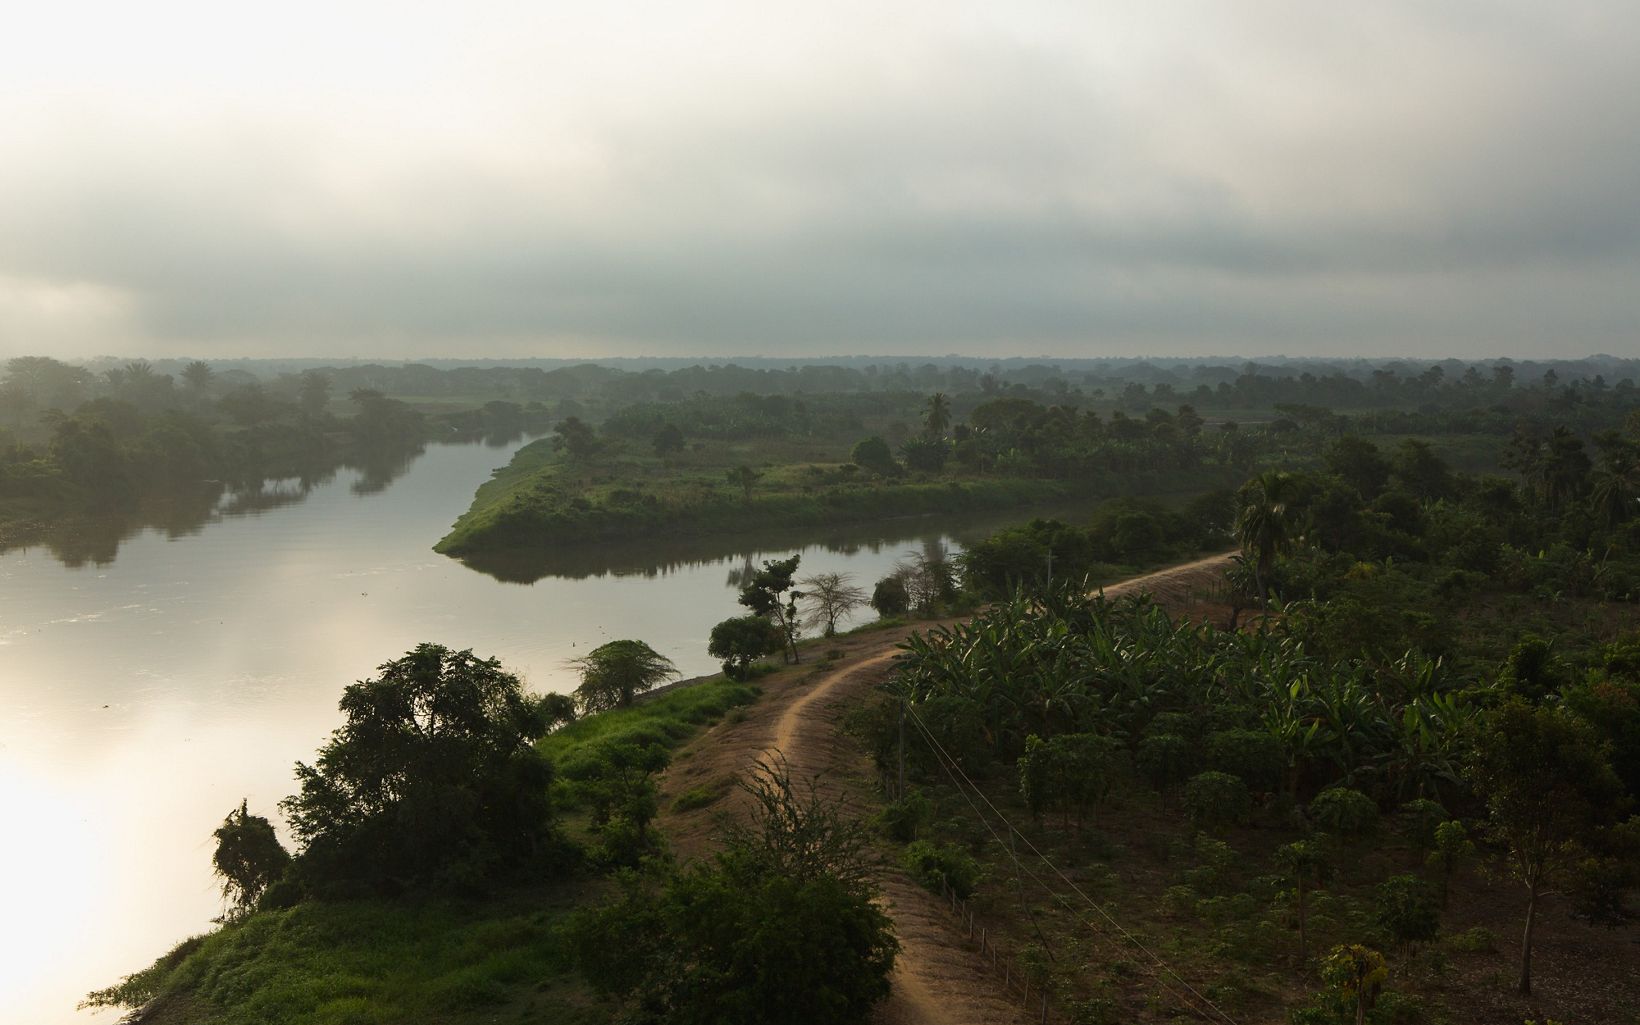 Comercio en el río Magdalena 
El río Magdalena cubre el 24% del territorio nacional y es una fuerza vital económica para los más de 30 millones de colombianos que viven en toda la cuenca. © Juan Arredondo